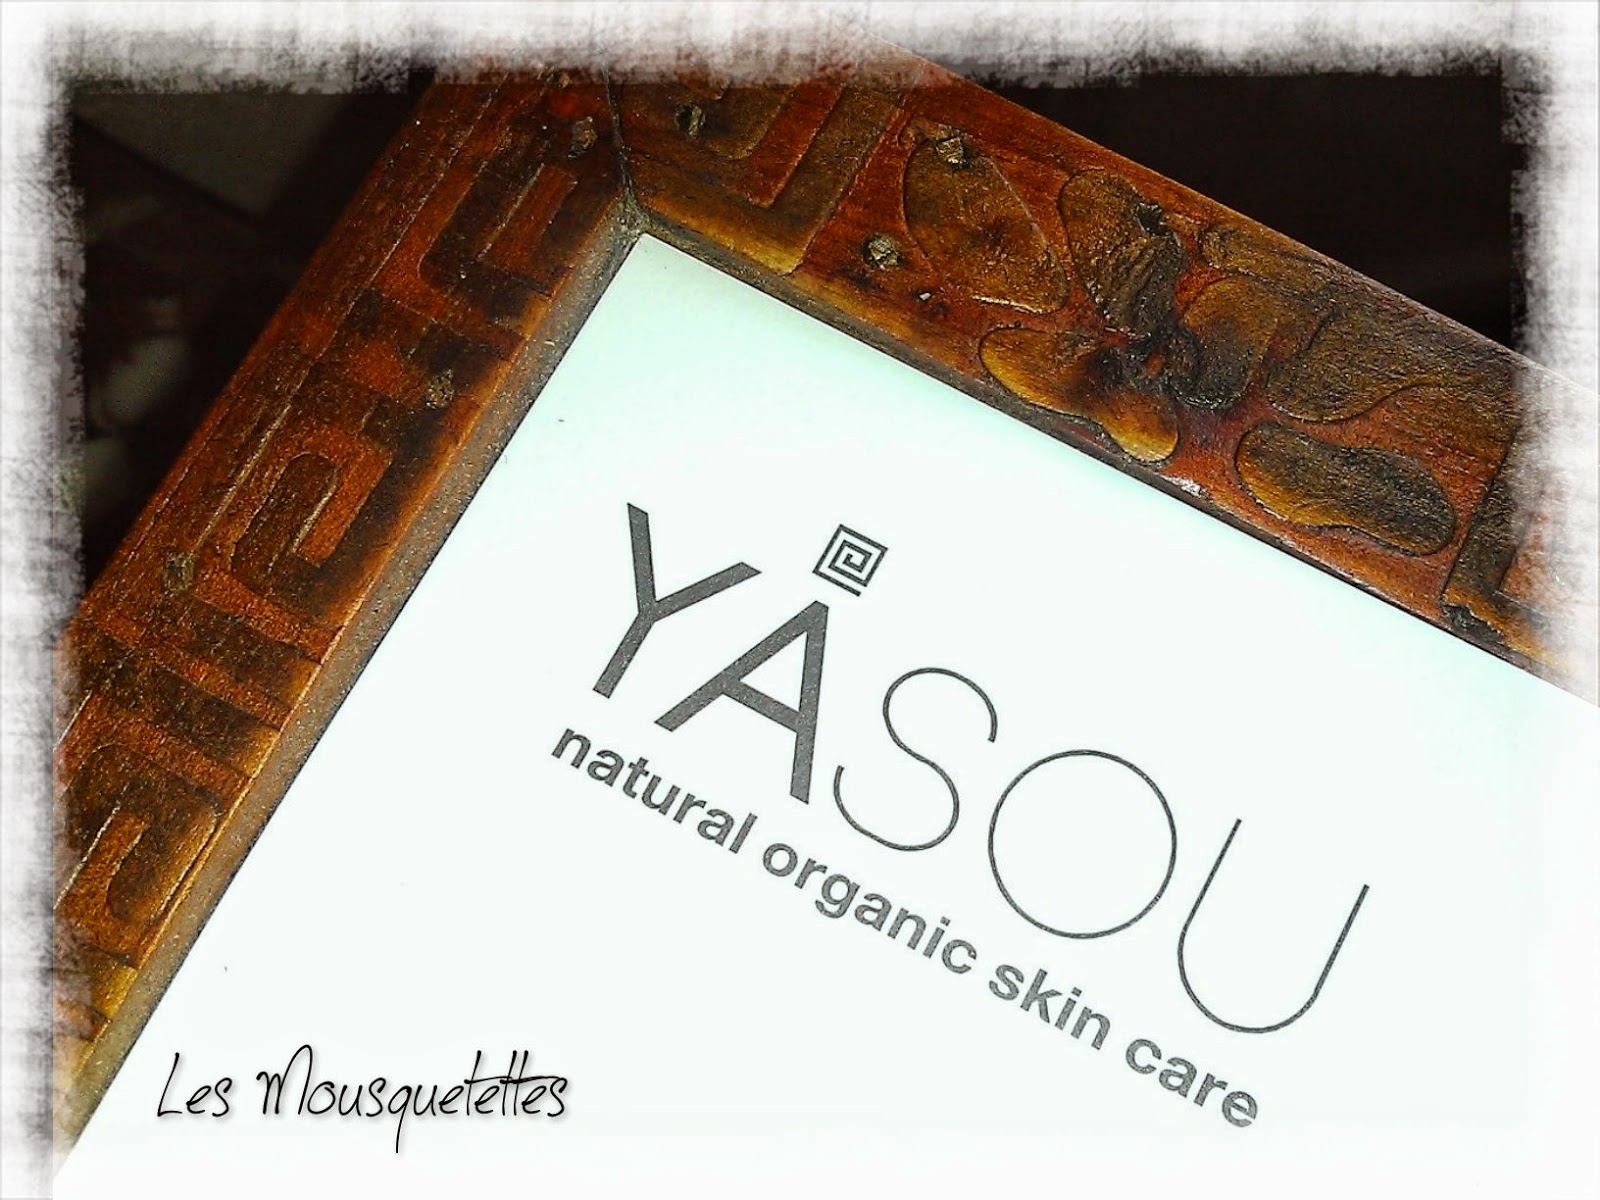 Yasou Natural Organic Skin Care - Les Mousquetettes©